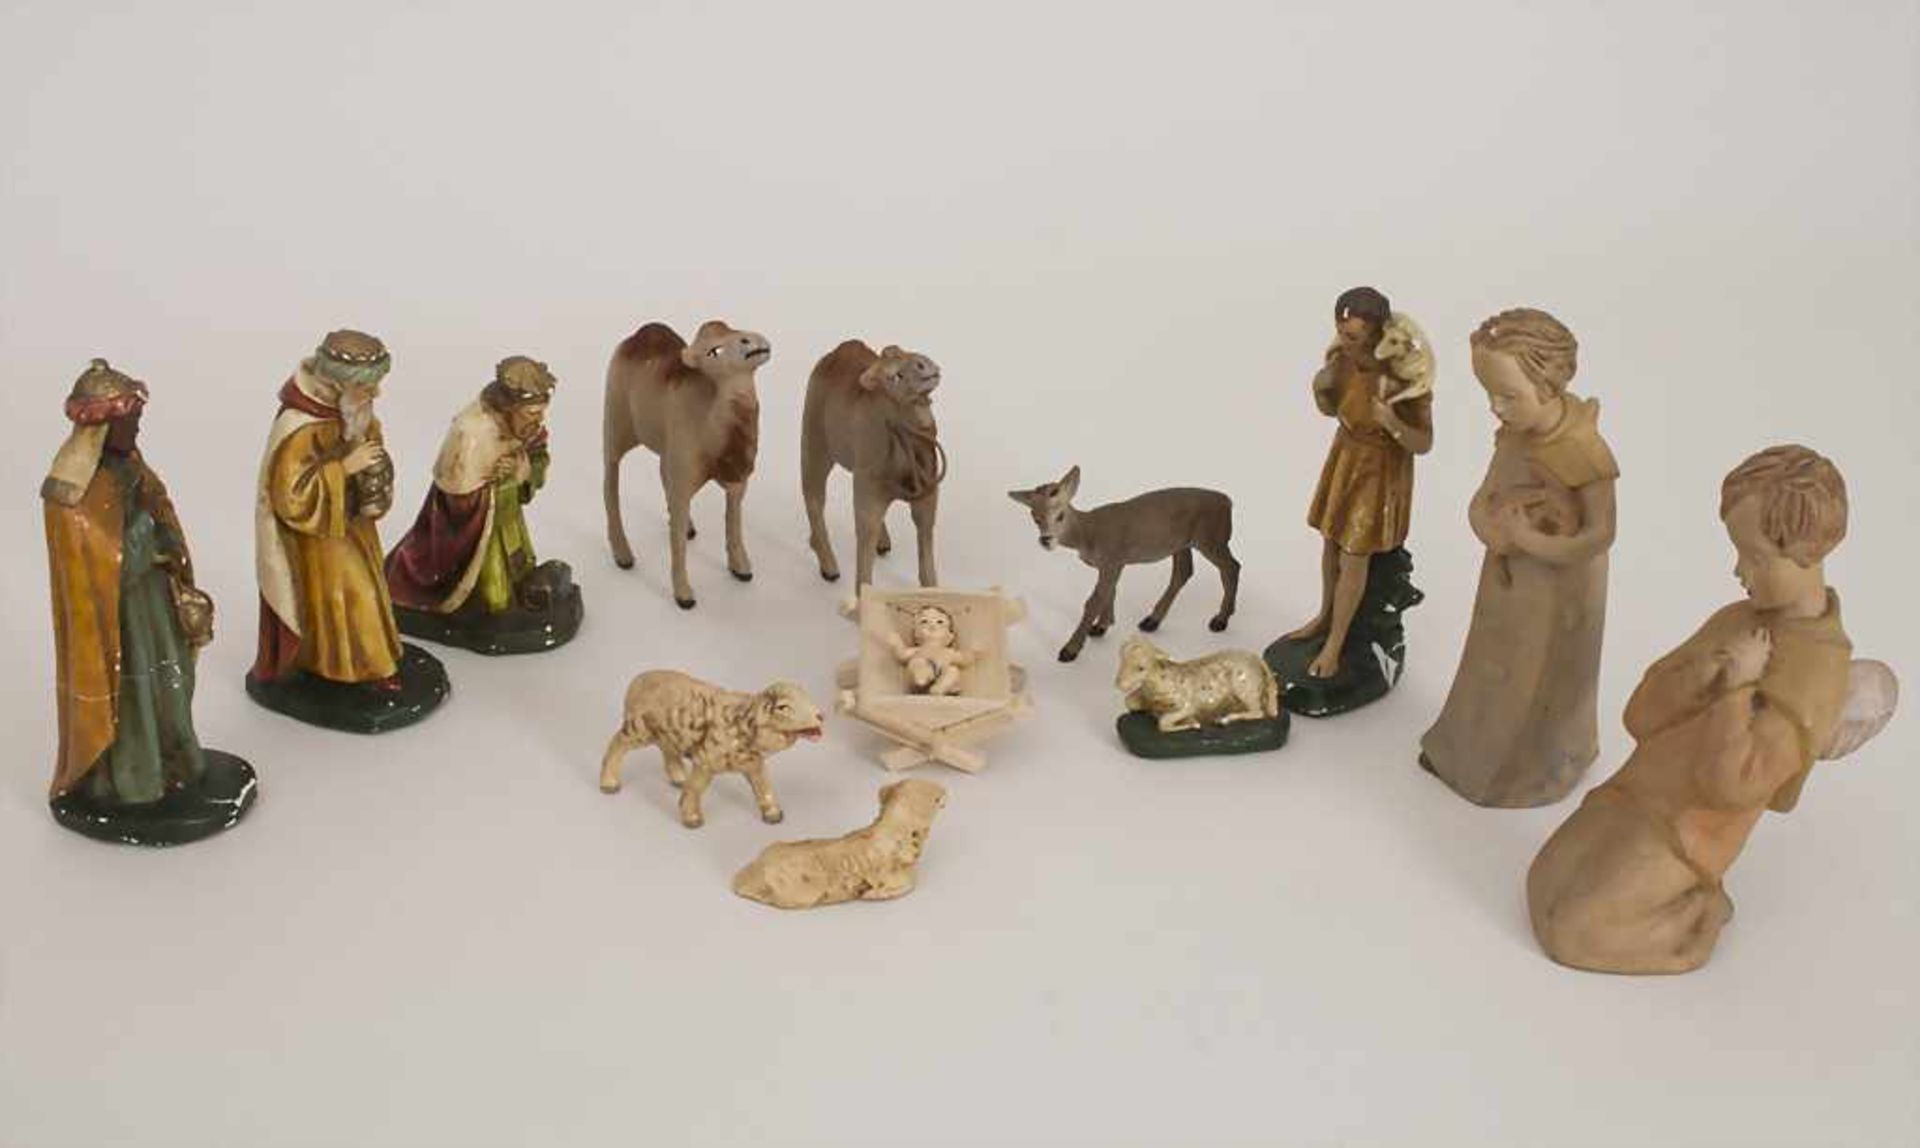 13 Krippenfiguren / 13 crib figuresMaterial: Gips, farbig staffiert, Holz, Höhen: 4 cm (